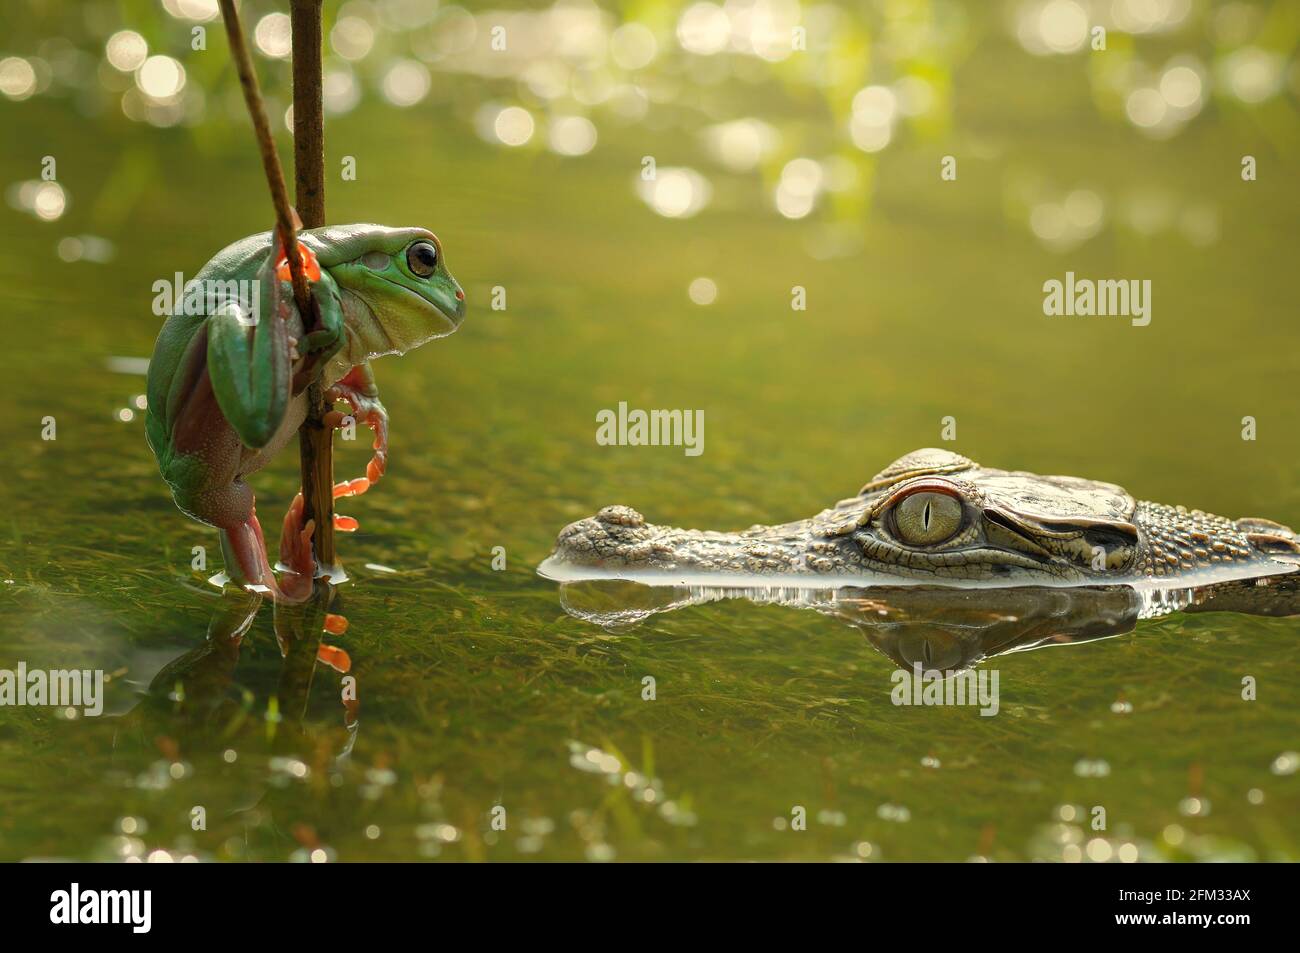 Krokodil in einem Fluss mit Blick auf einen Frosch auf einem Ast, Indonesien Stockfoto